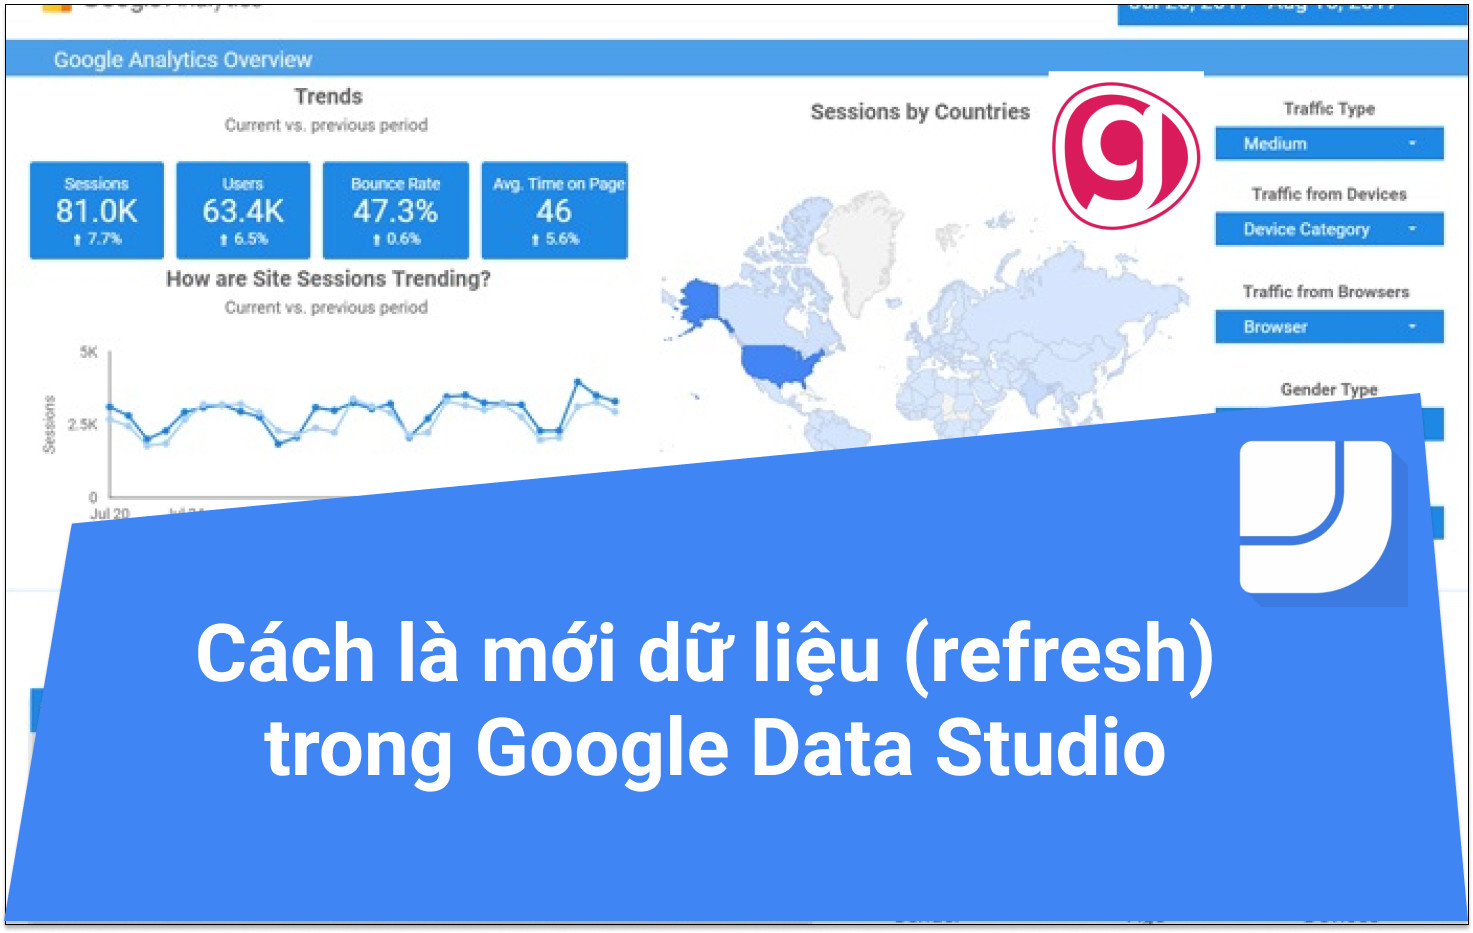 Cách làm mới dữ liệu trong Google data studio để đồng bộ dữ liệu.